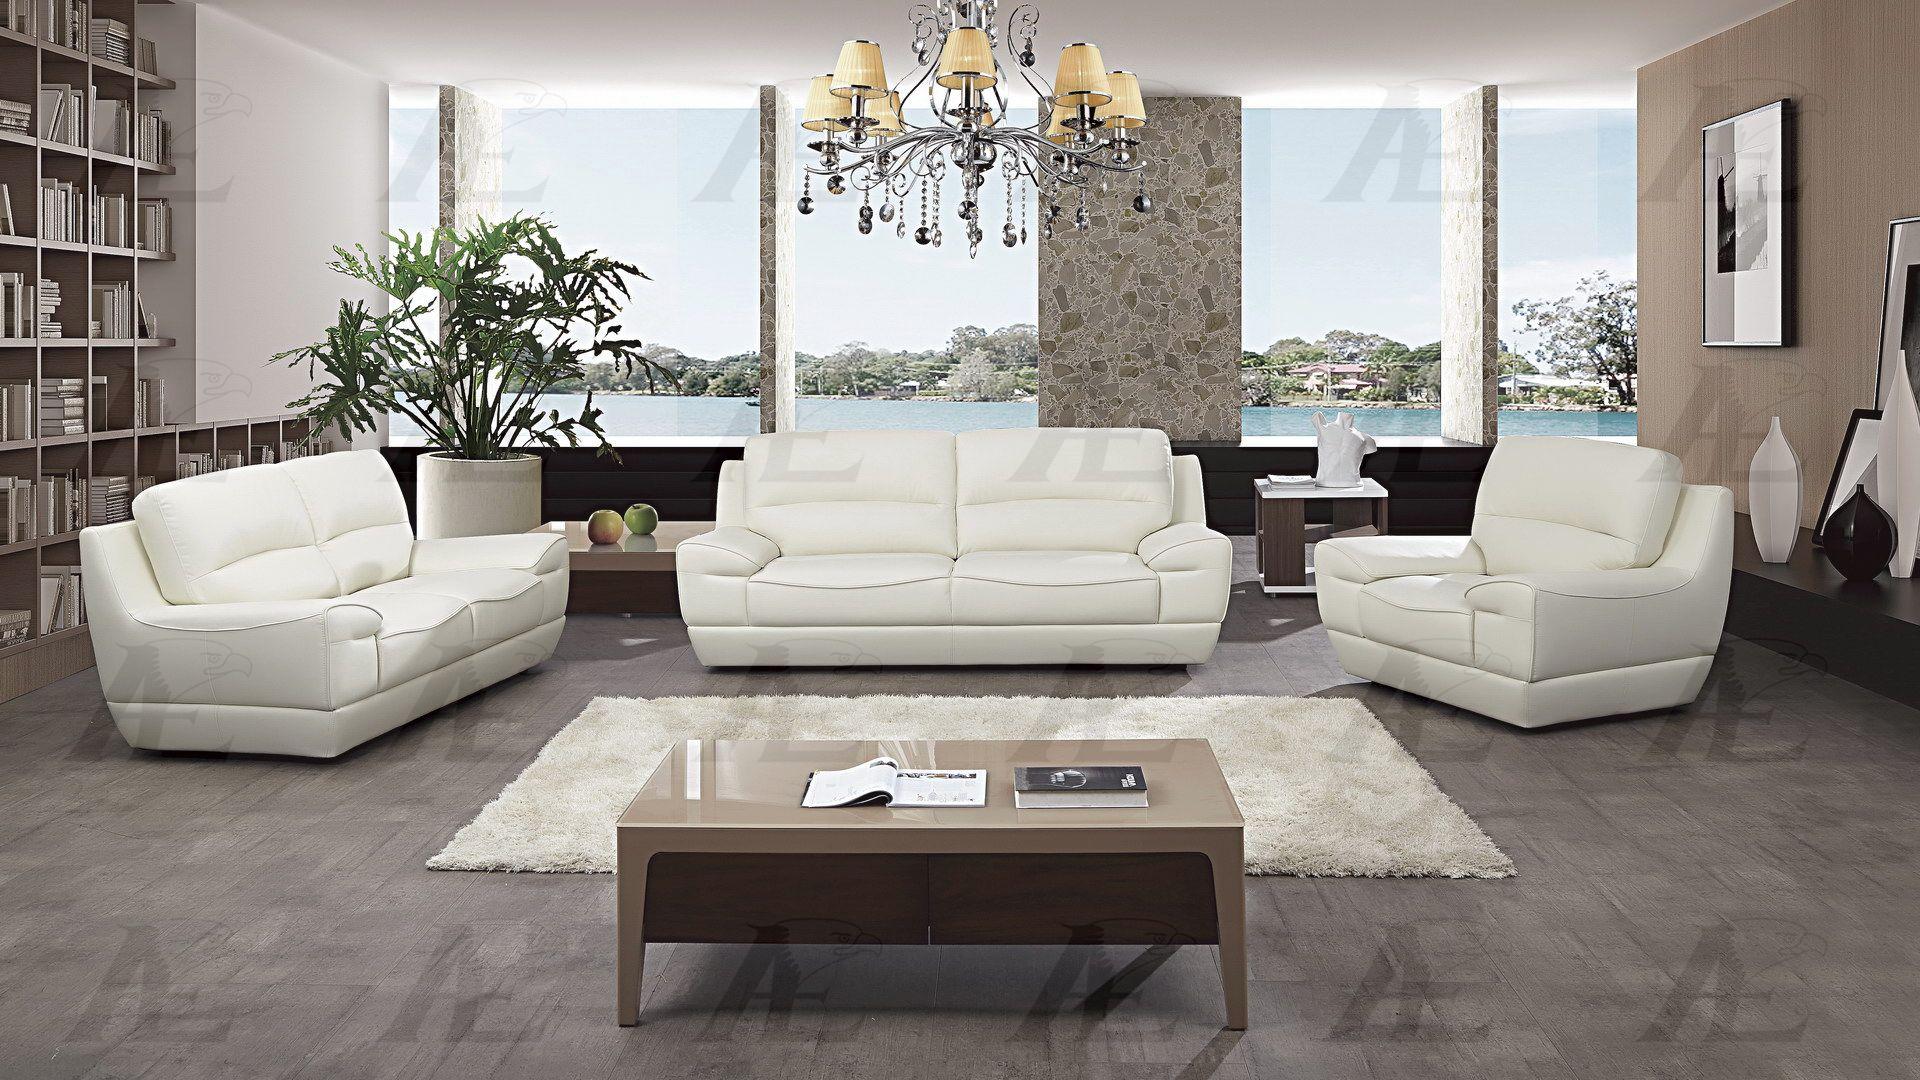 

    
American Eagle Furniture EK018-W-SF Sofa White EK018-W-SF
